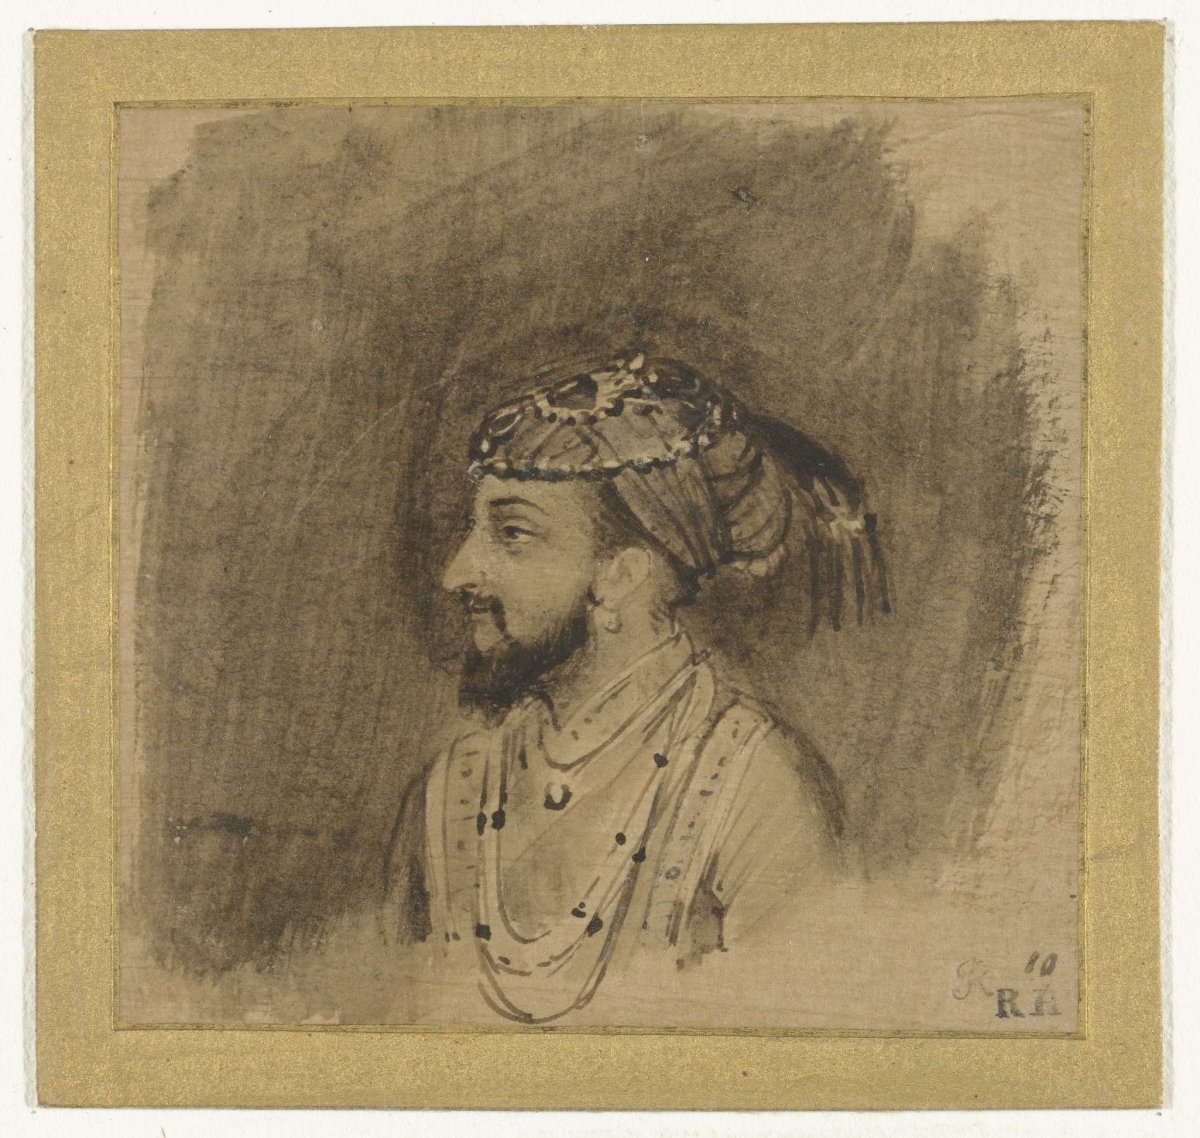 Shah Jahan, Rembrandt van Rijn, c. 1656 - c. 1658